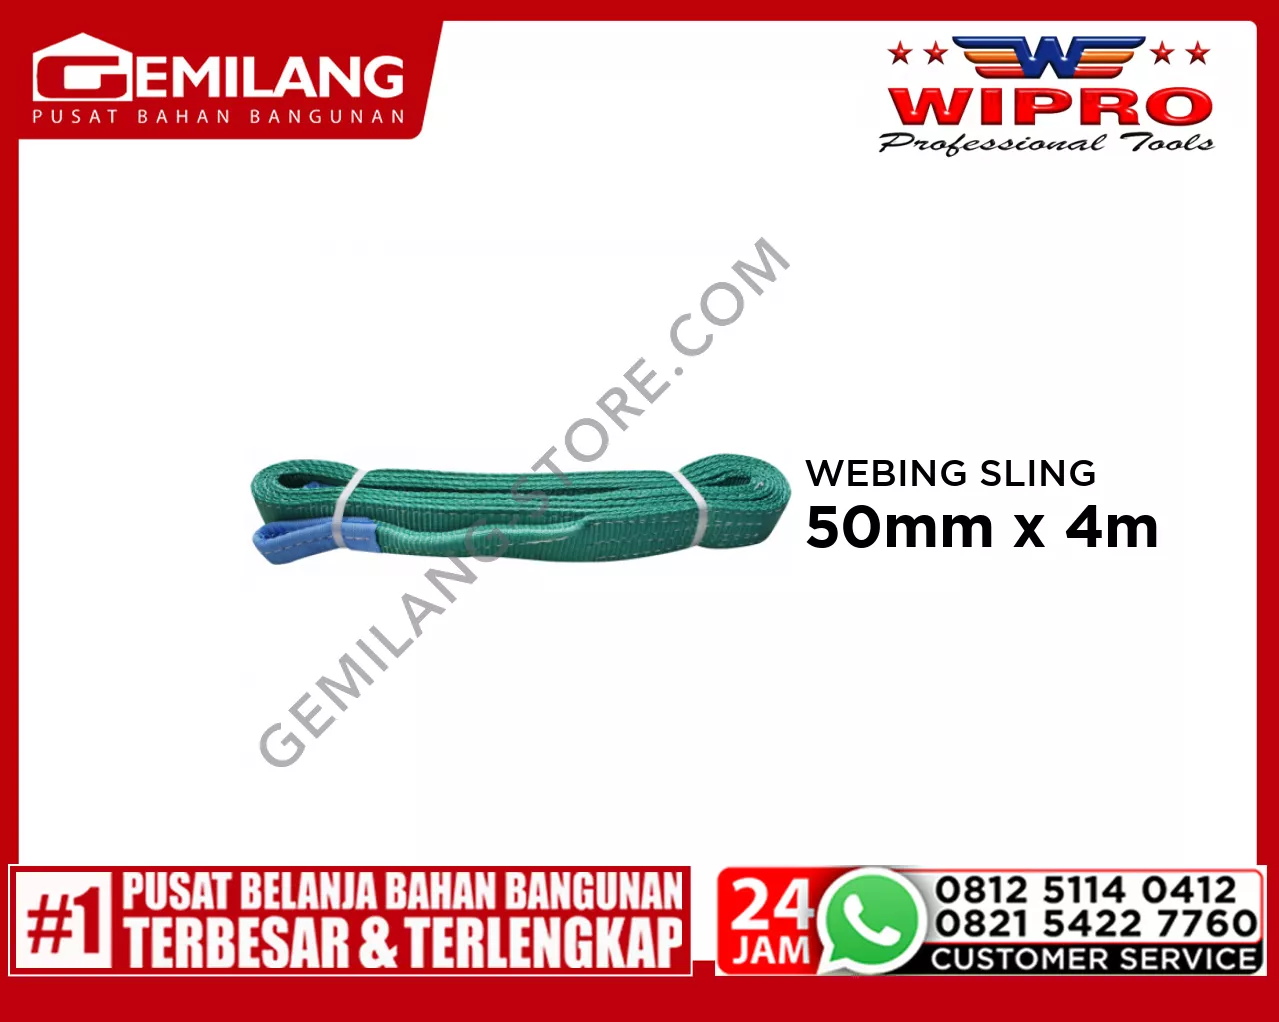 WIPRO WEBING SLING WLL 2T4 (HIJAU) 50mm x 4m